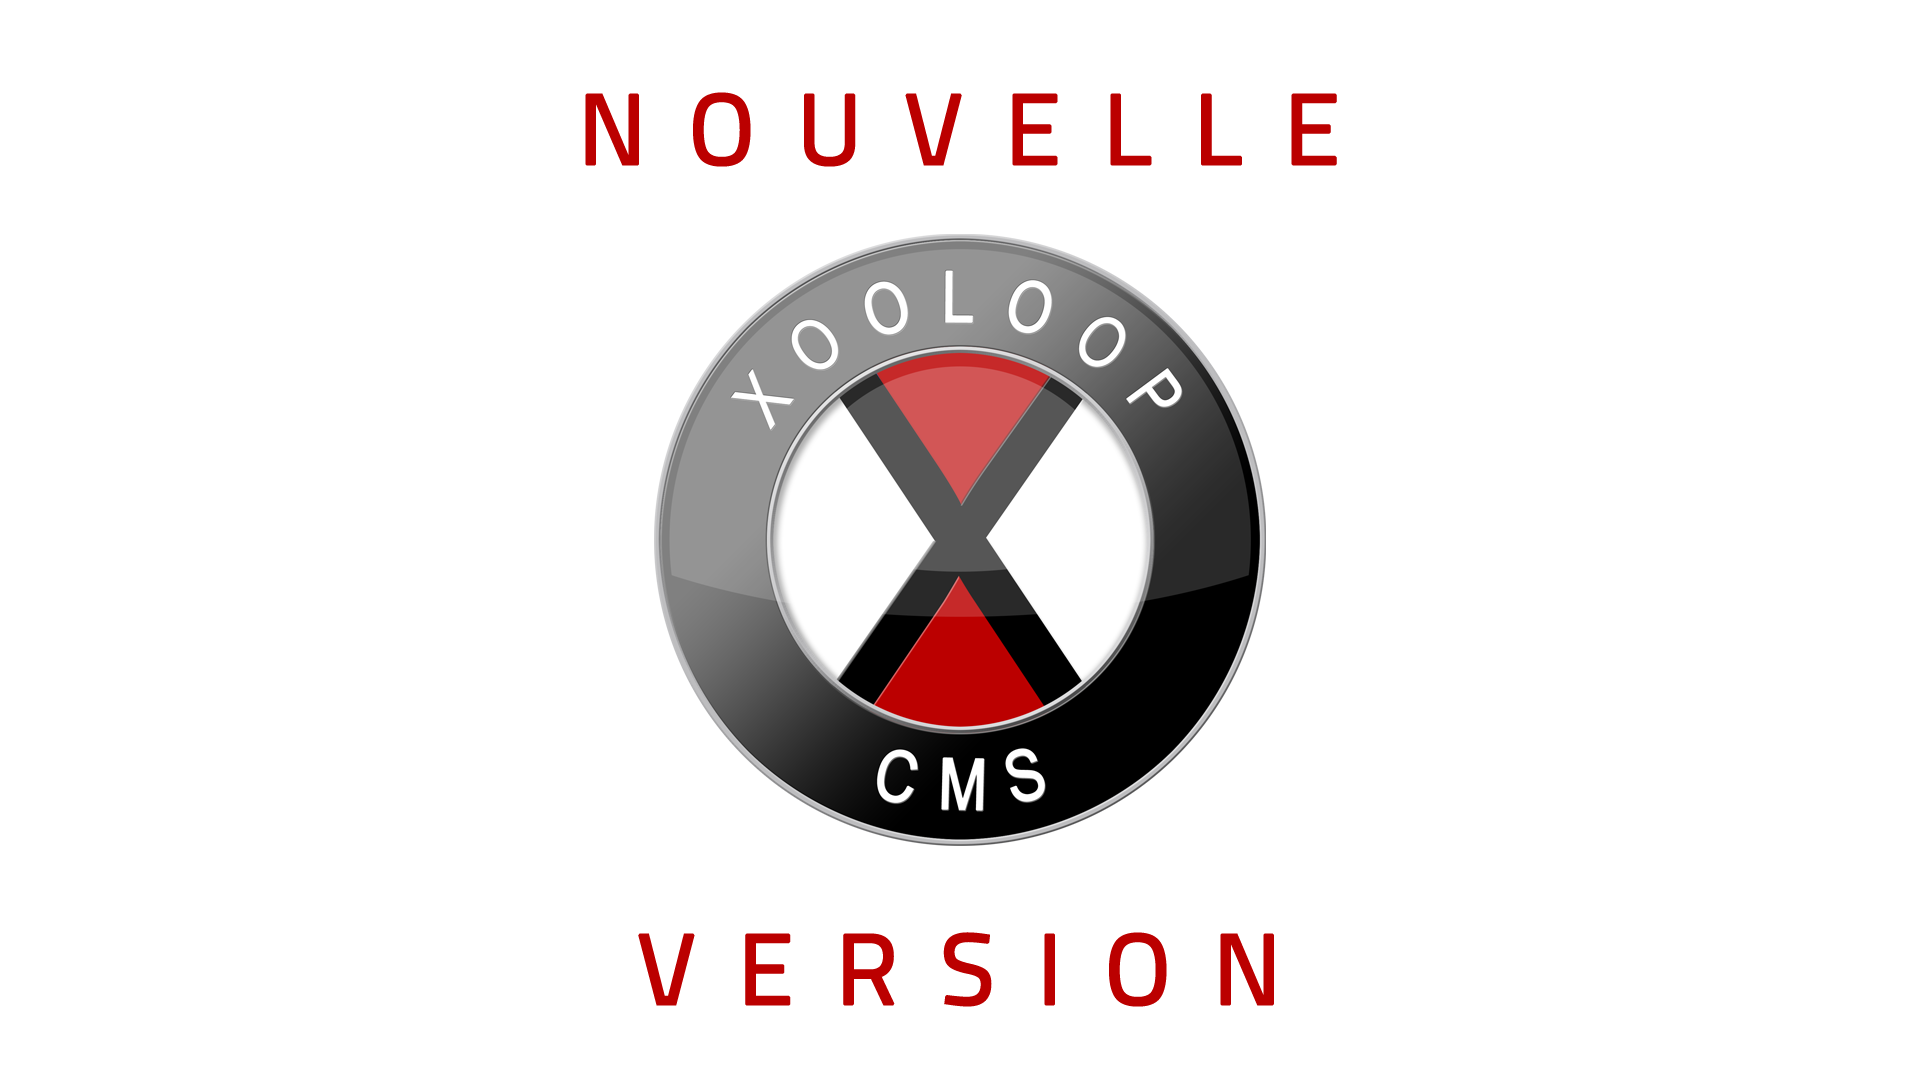 Nouvelle version de Xooloop CMS (v3.4.2)